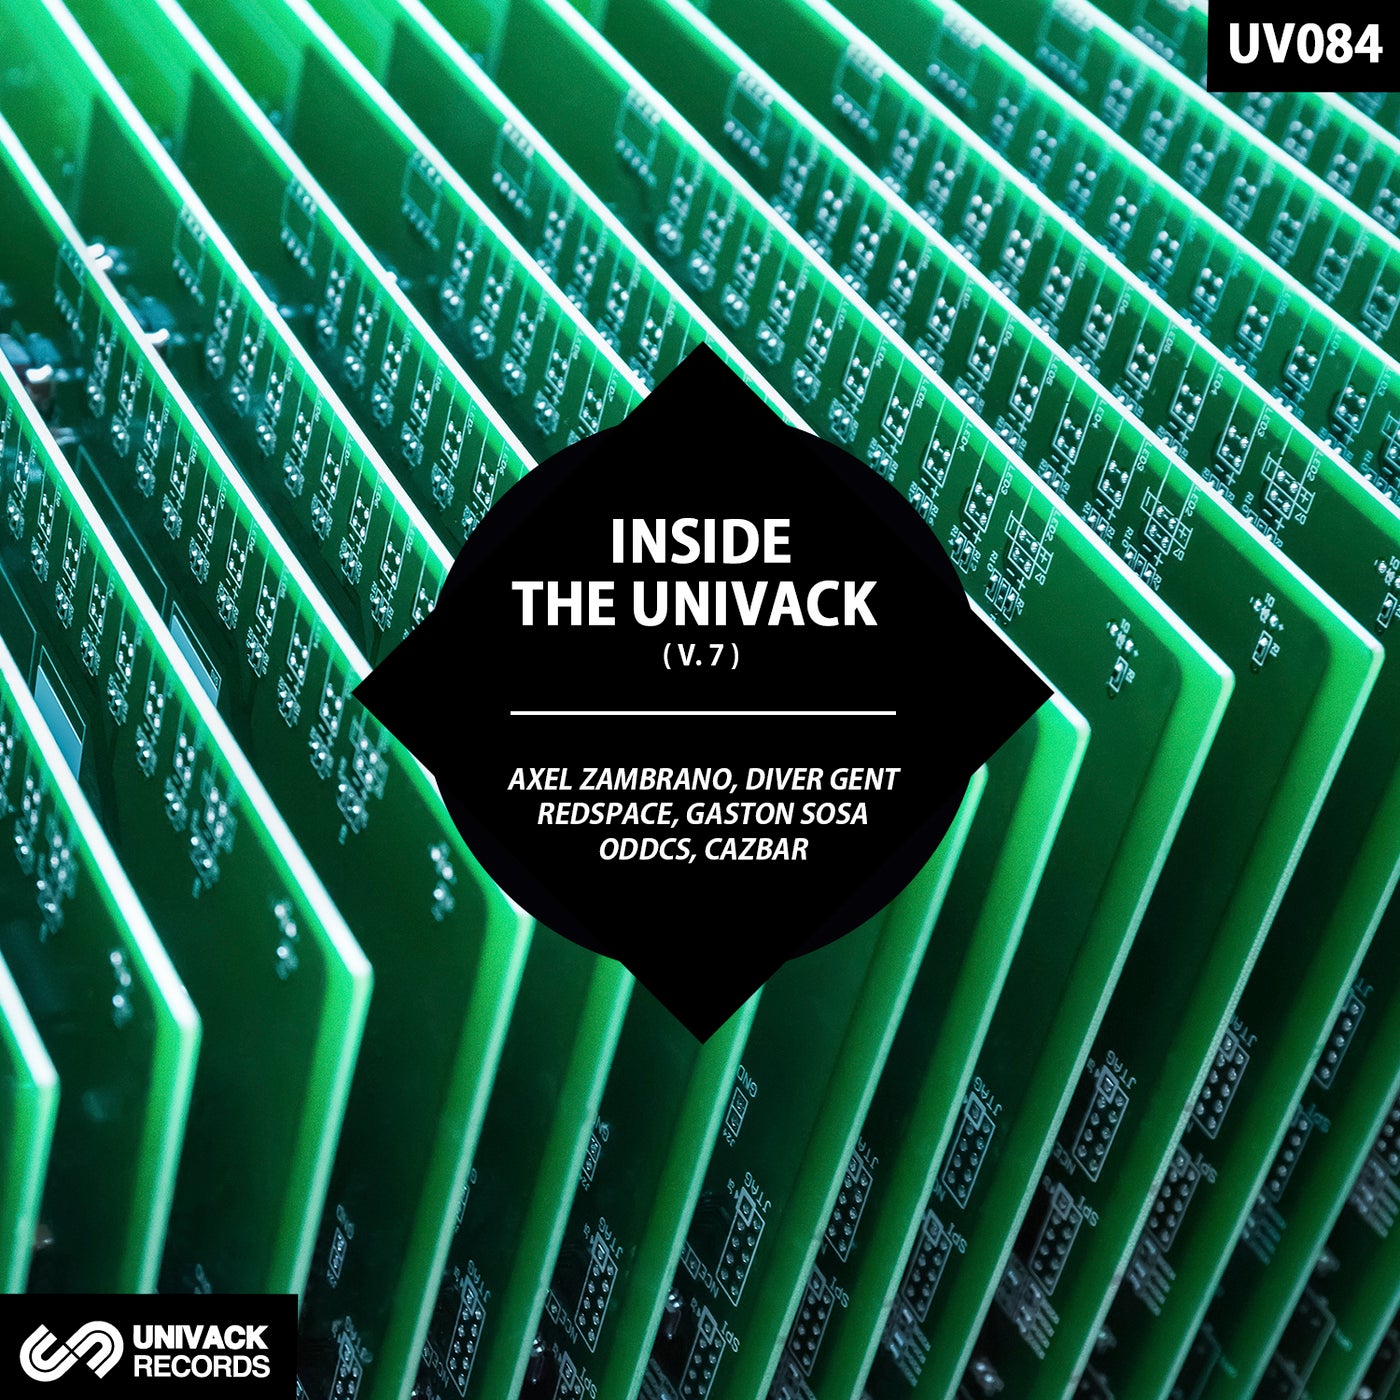 Inside The Univack V.7